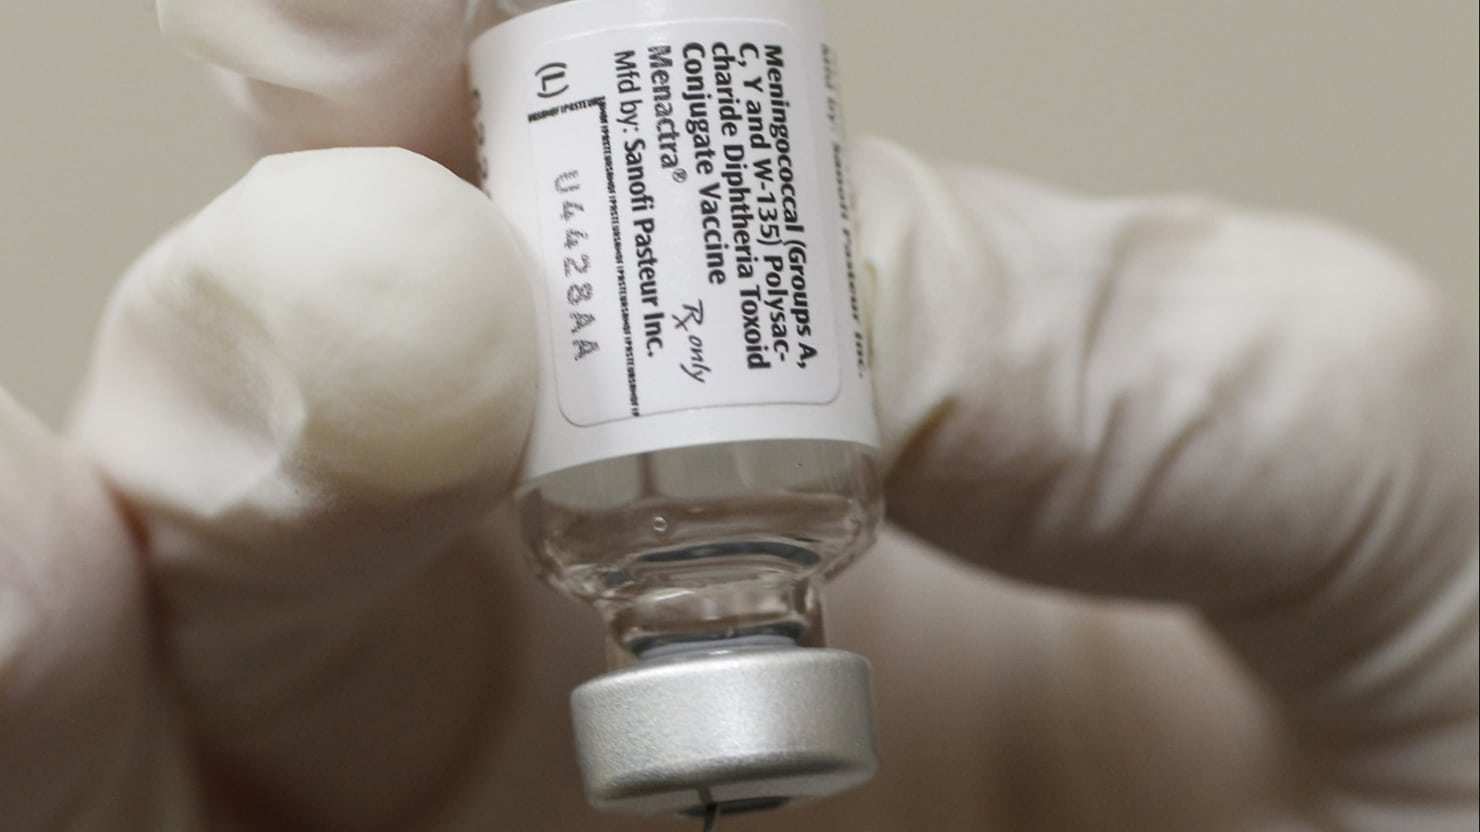 STOP the Meningitis Vaccine Mandate